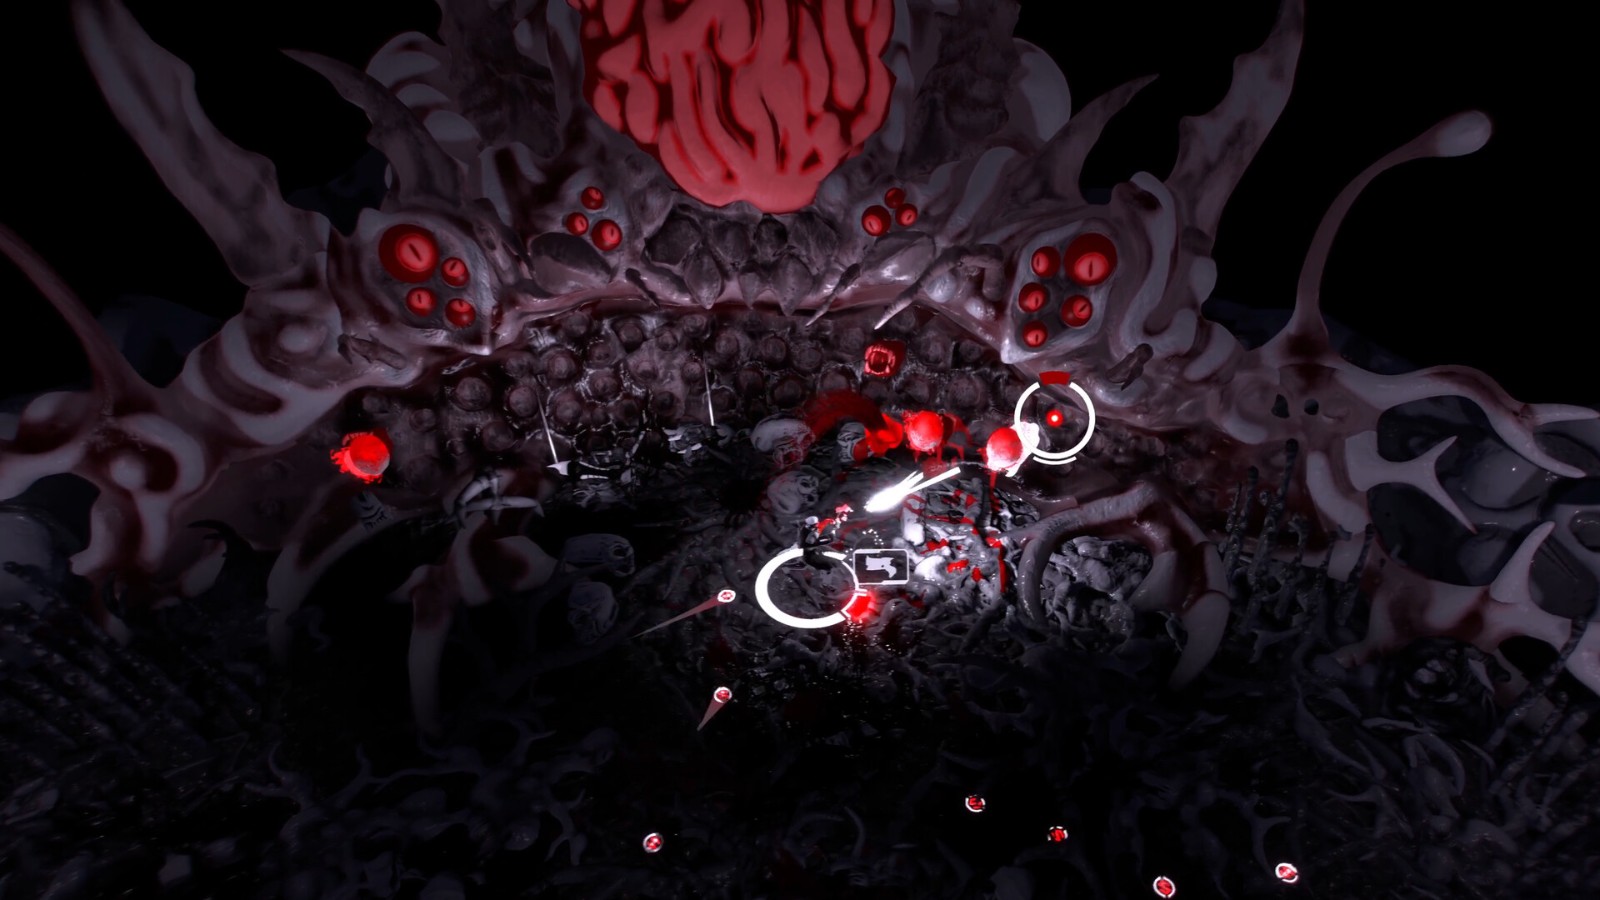 双摇杆射击游戏《血海雷霆》 现已在Steam发售 二次世界 第7张